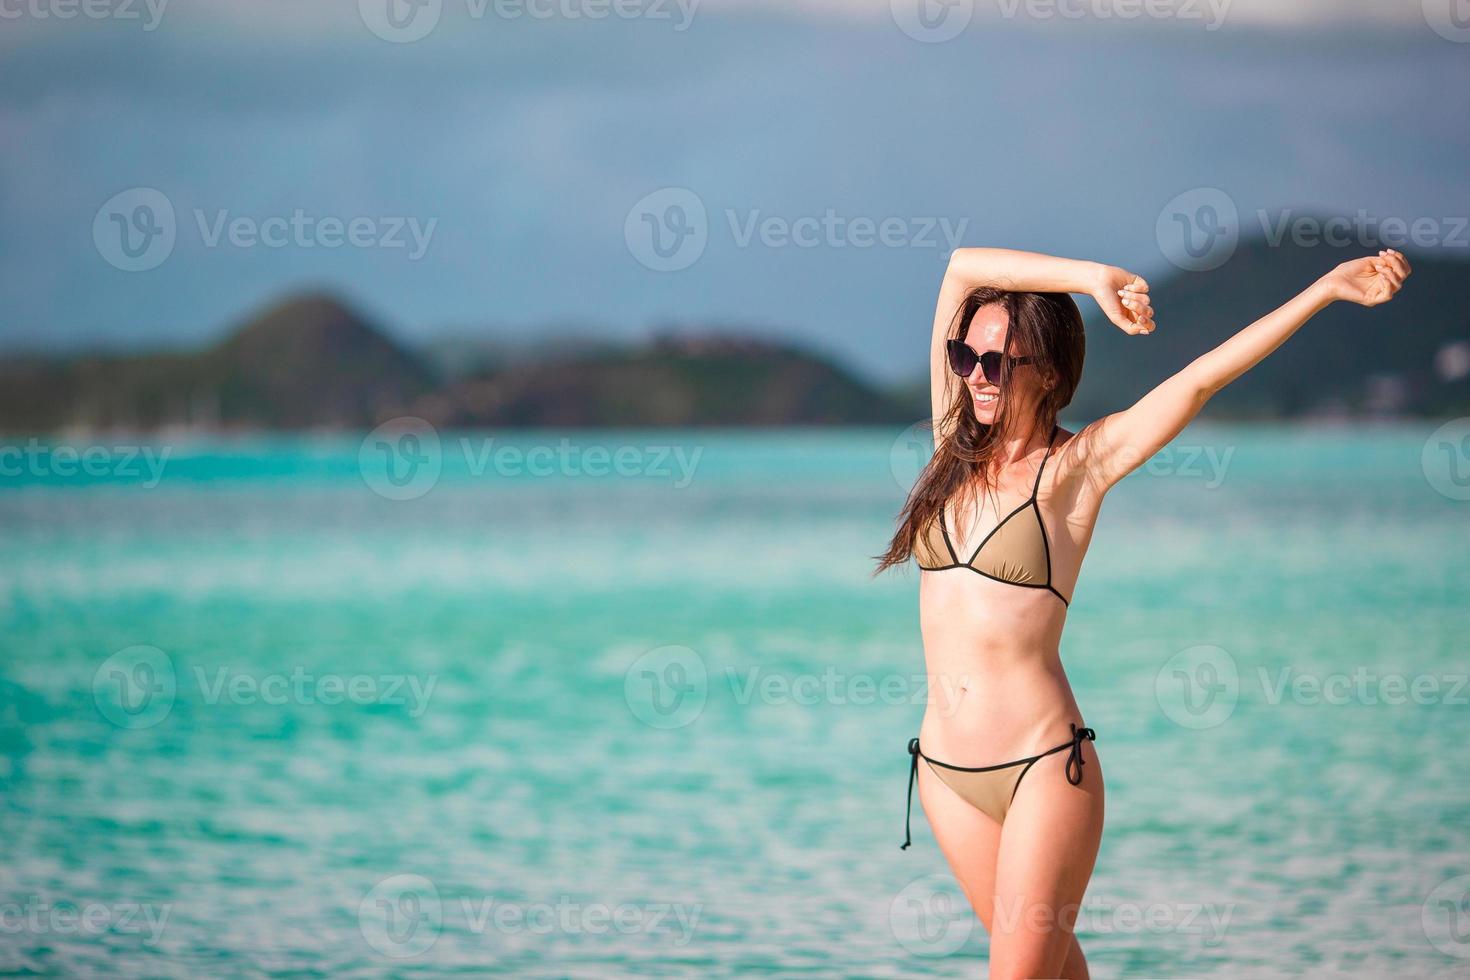 personnes de vacances à la plage - femme regardant un paradis parfait avec de l'eau de mer turquoise en vacances dans les Caraïbes. fille en bikini prenant un bain de soleil pendant les vacances de voyage sur l'île de luxe. photo